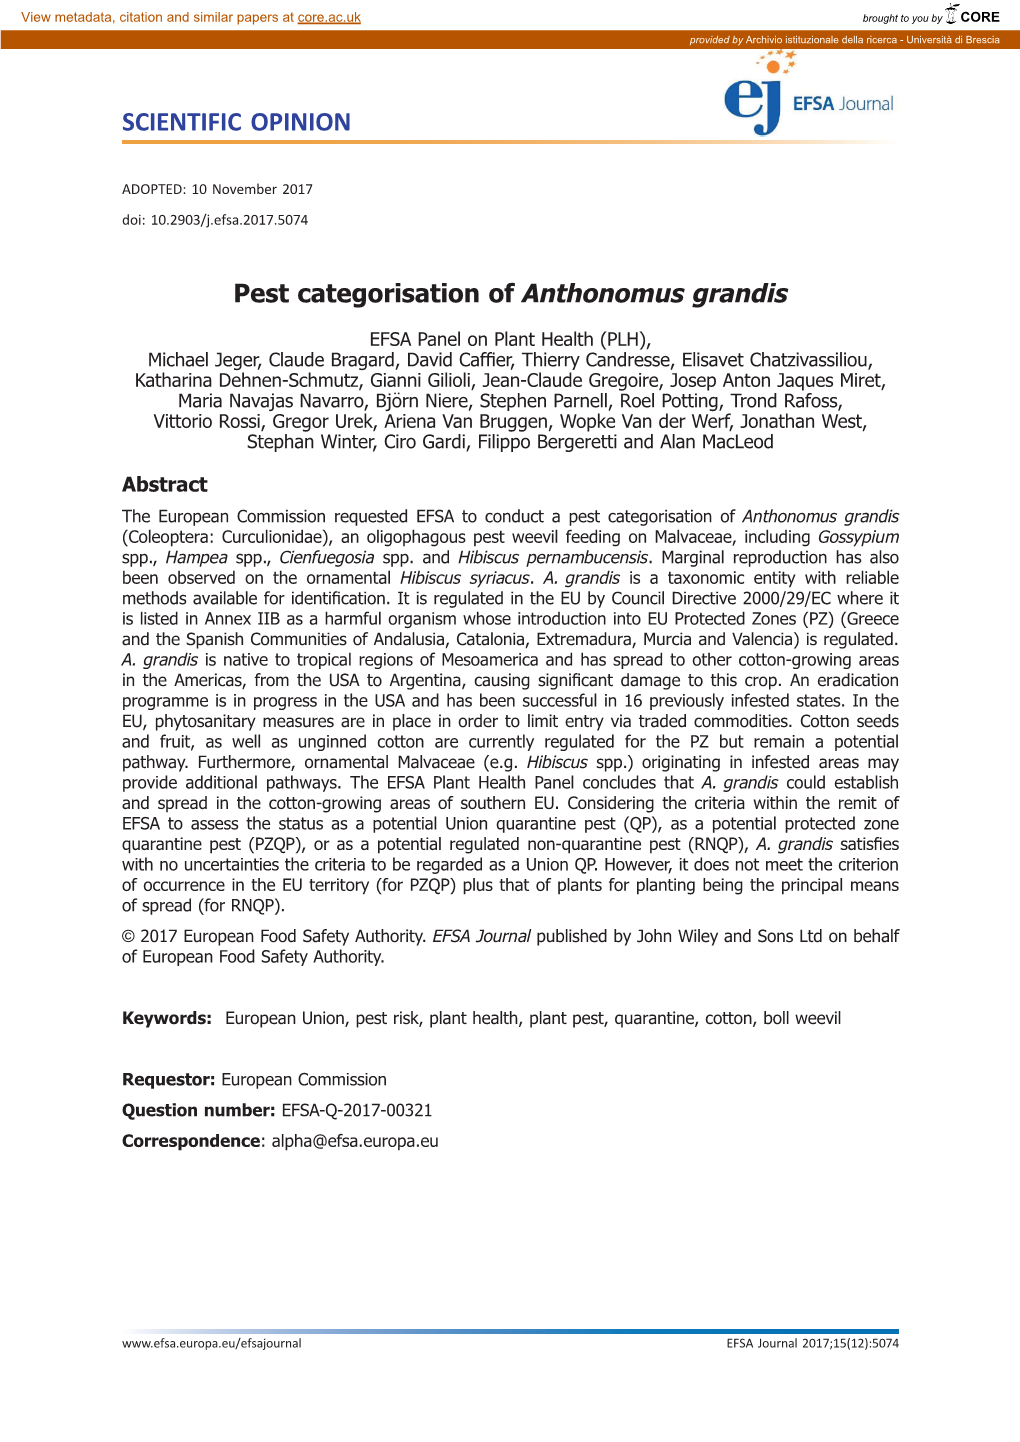 Pest Categorisation of Anthonomus Grandis